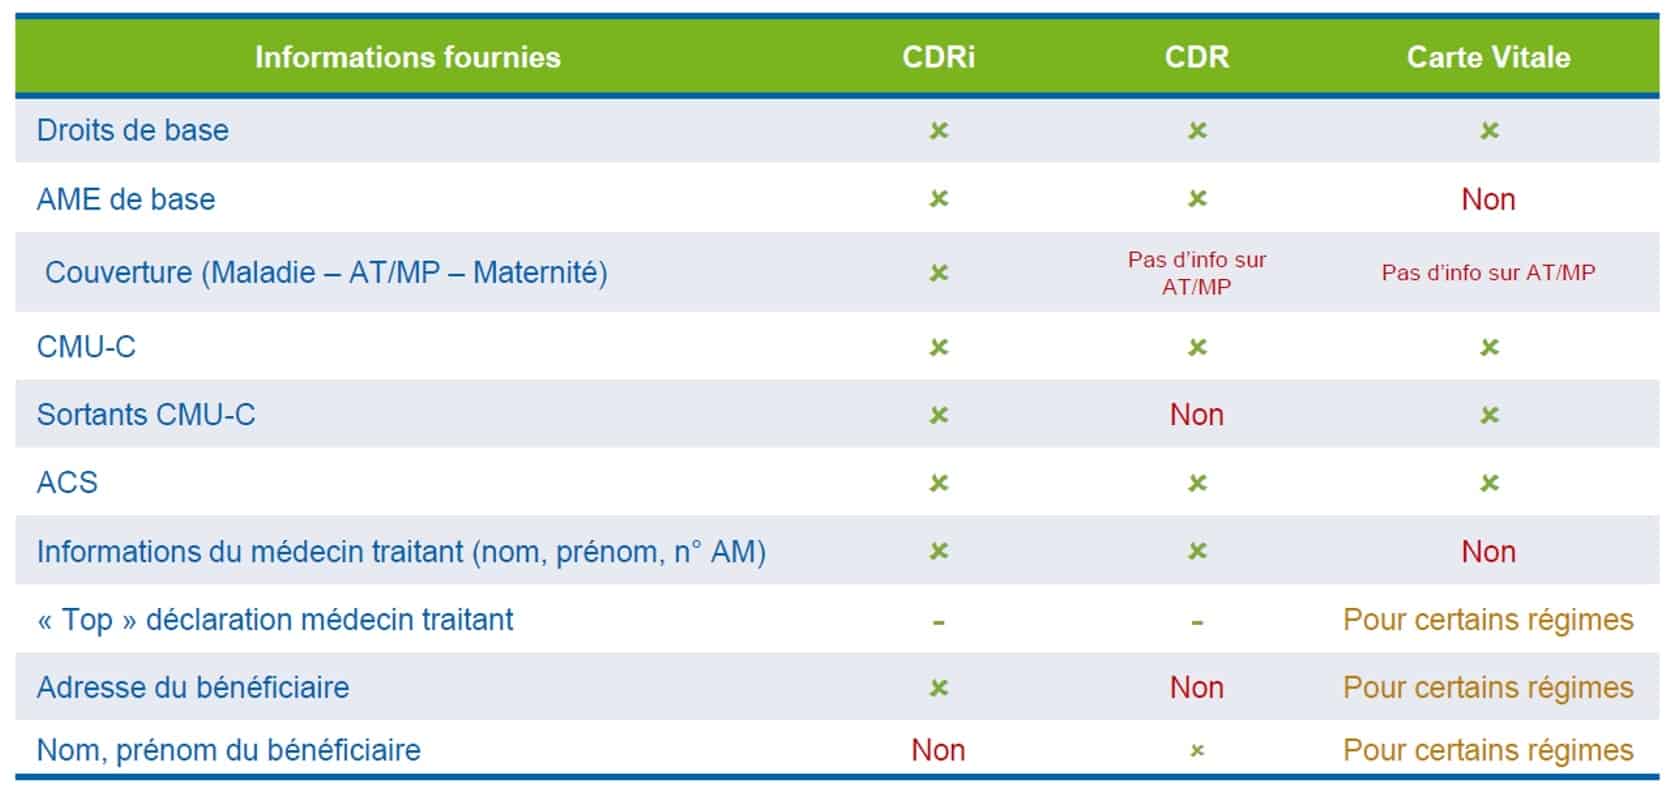 Tableau comparatif CDR / CDRi / Carte vitale.